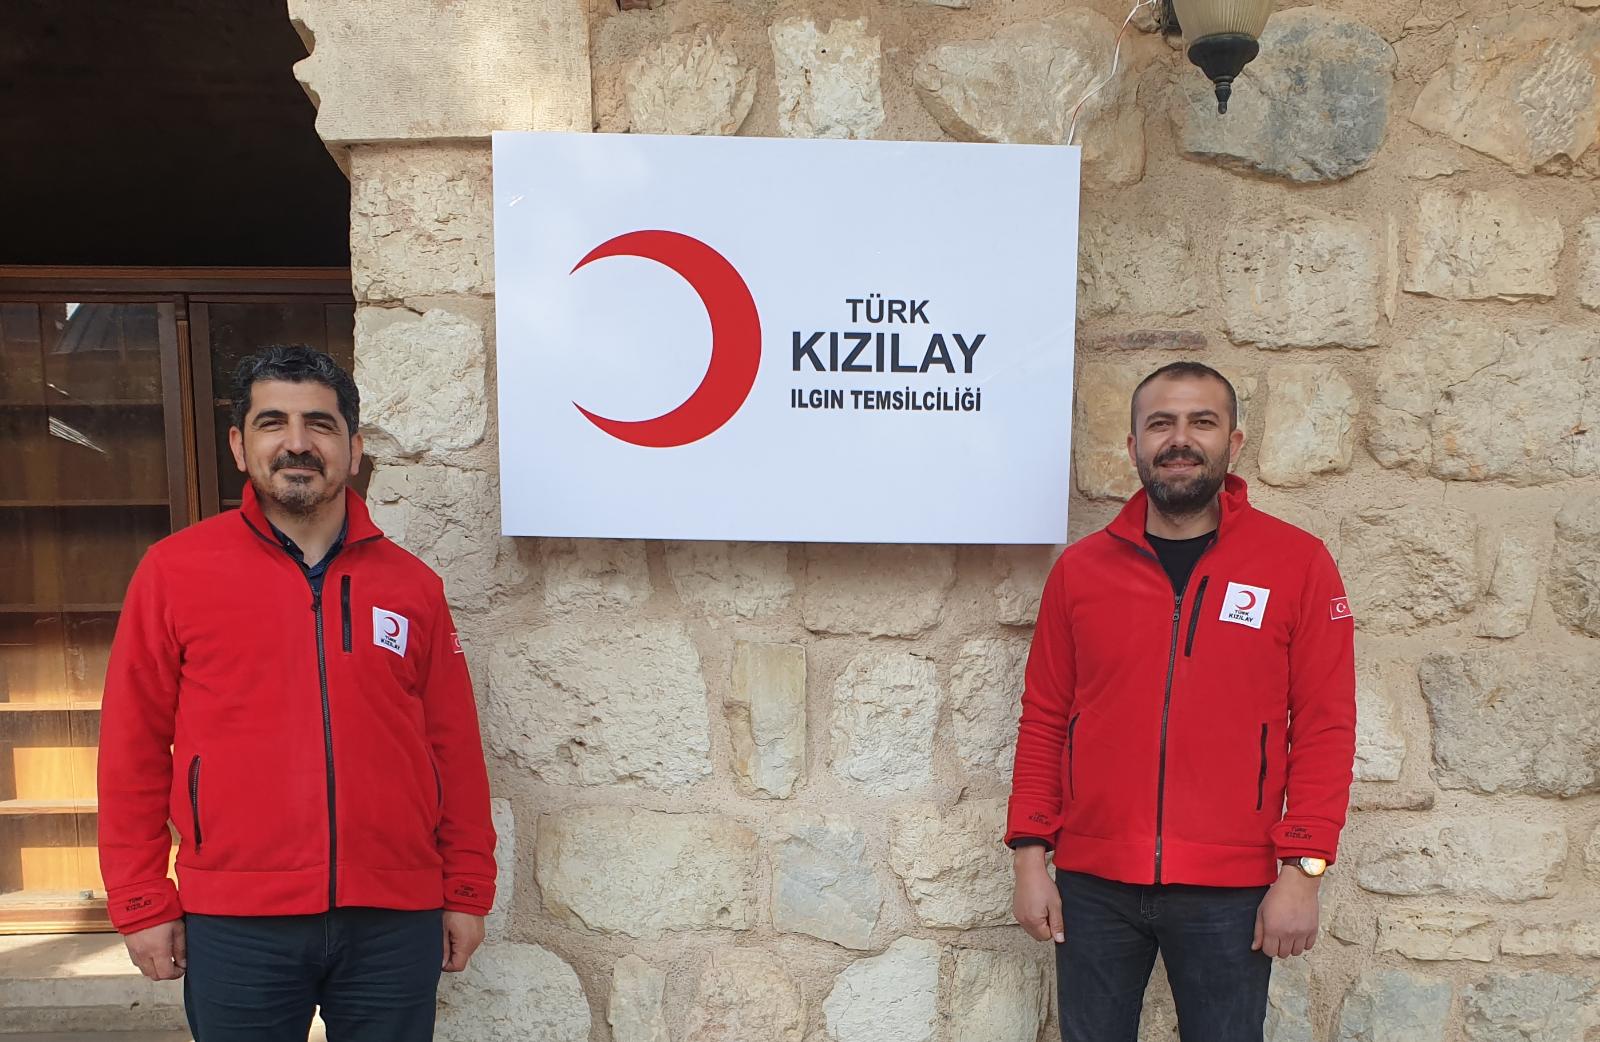  Türk Kızılayı Ilgın Temsilciliği Açıldı